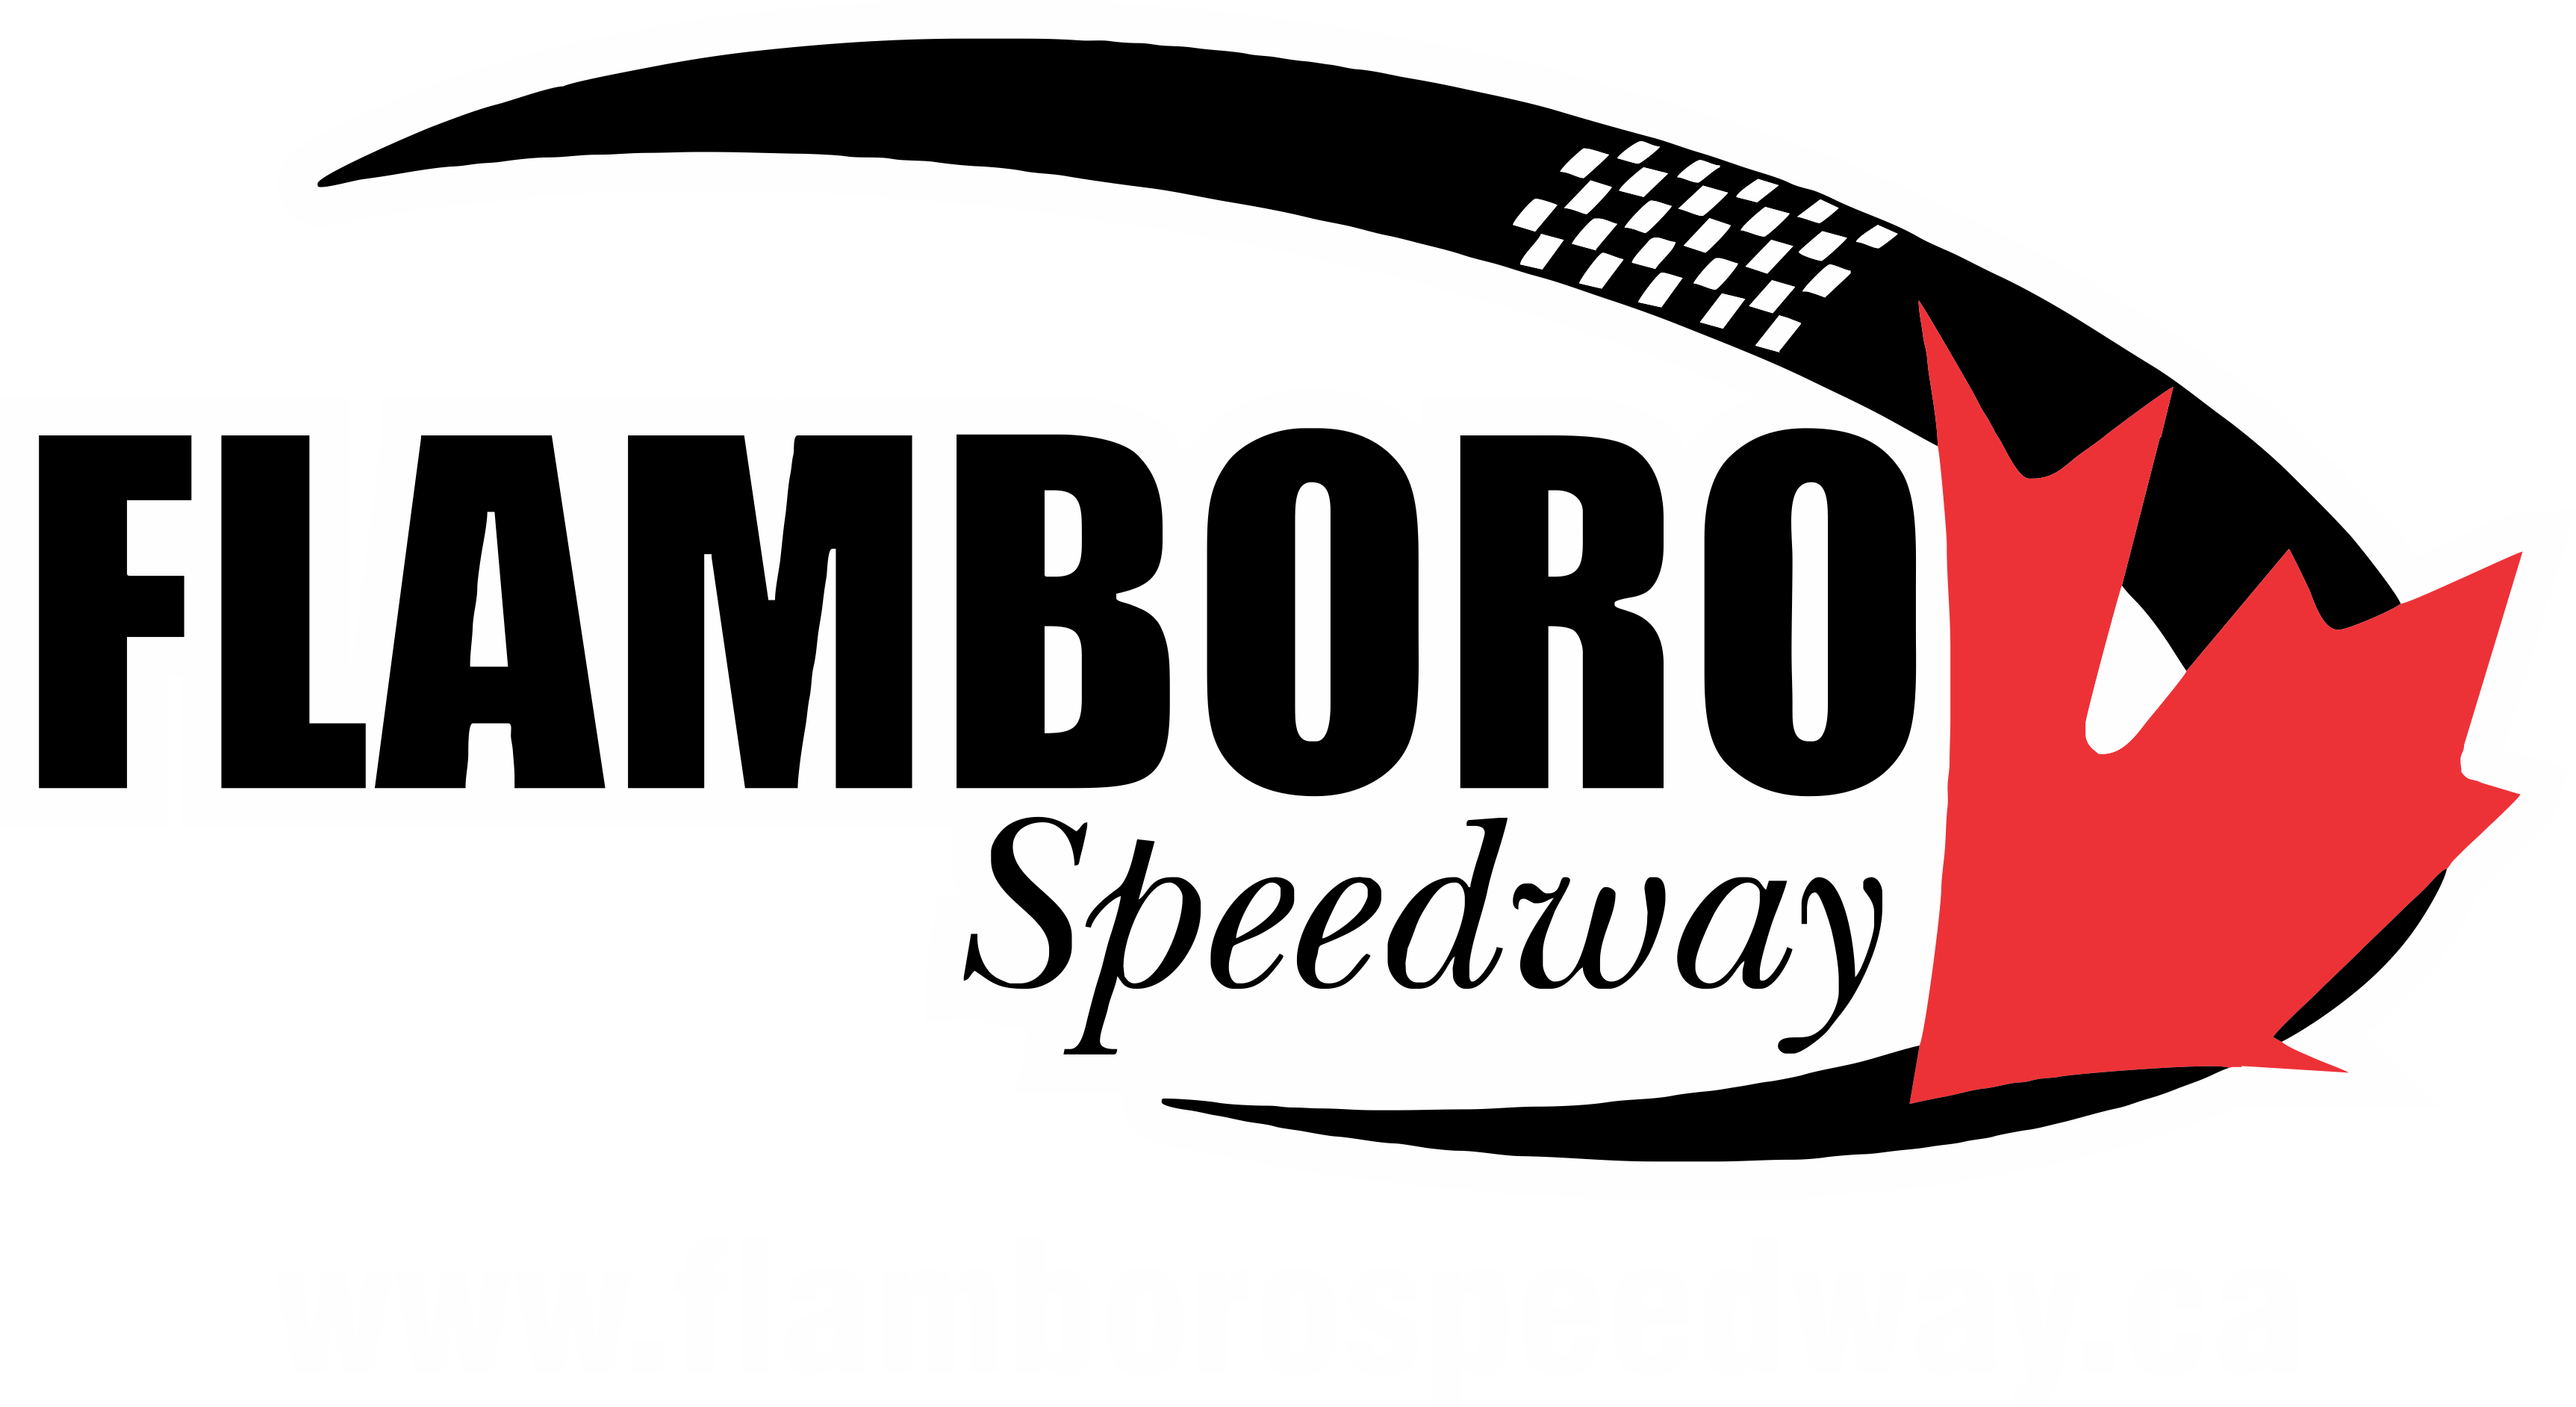 Flamboro Speedway Kid's Hoodie